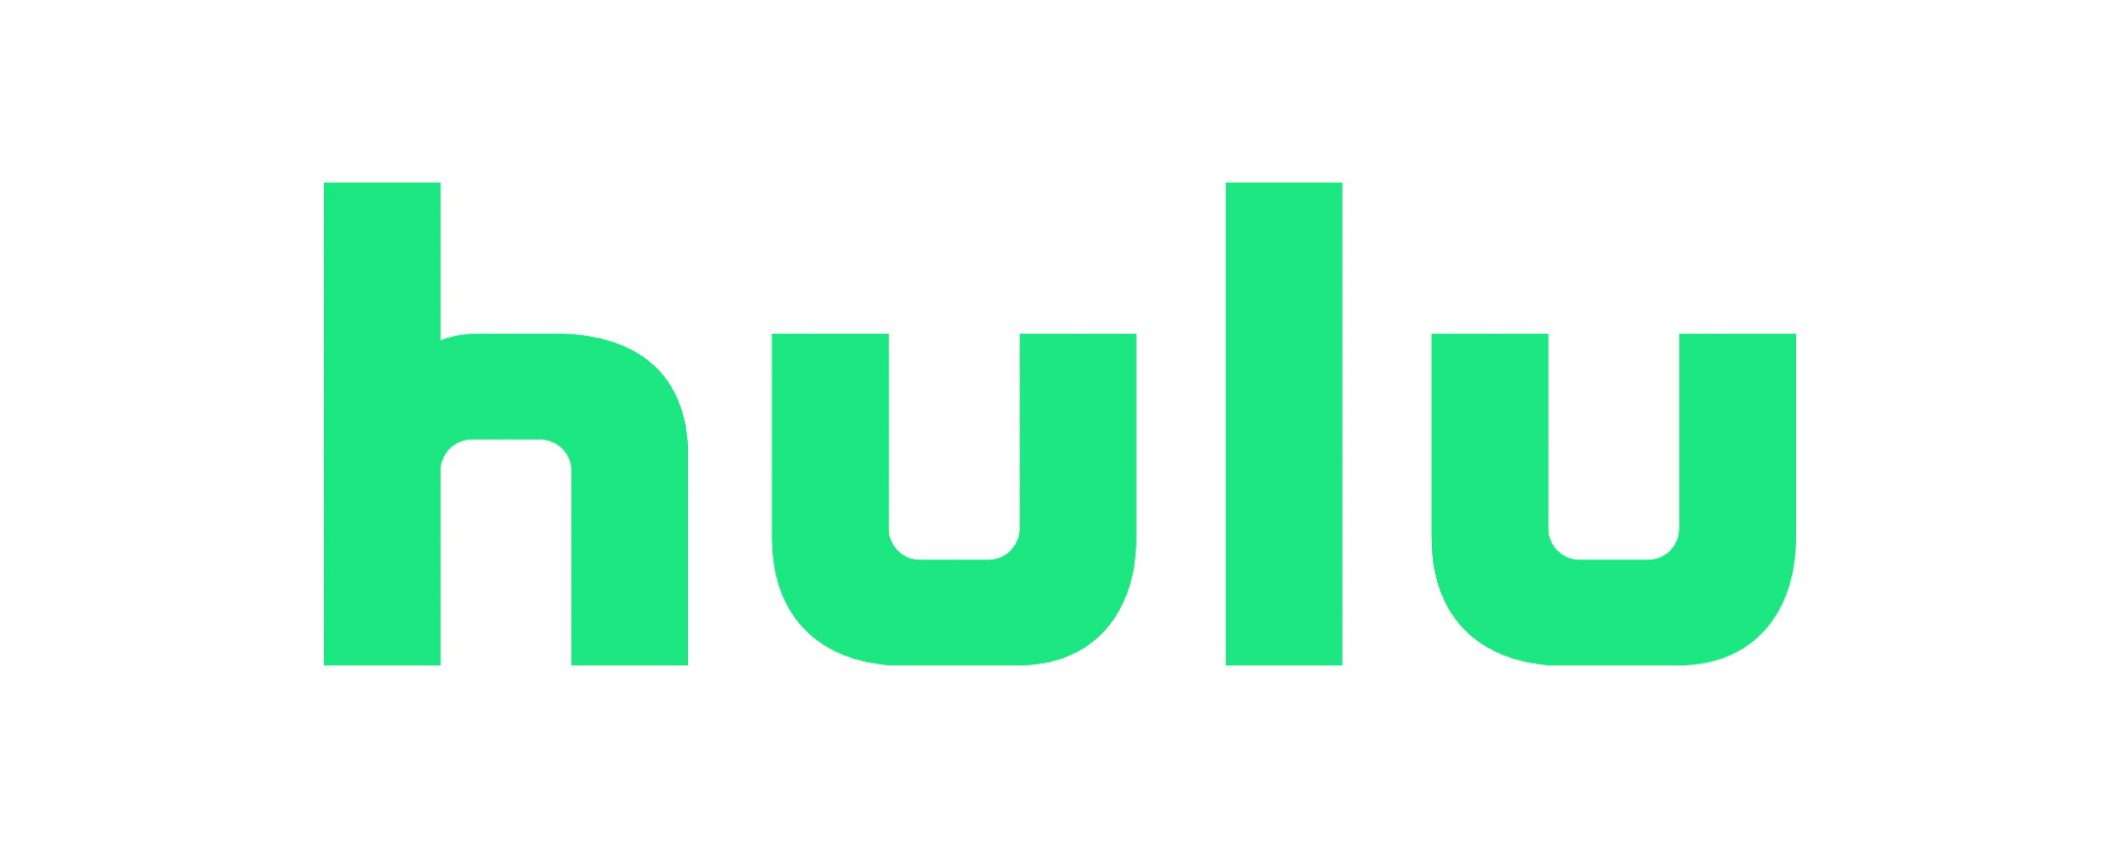 Come vedere Hulu in streaming dall'Italia?